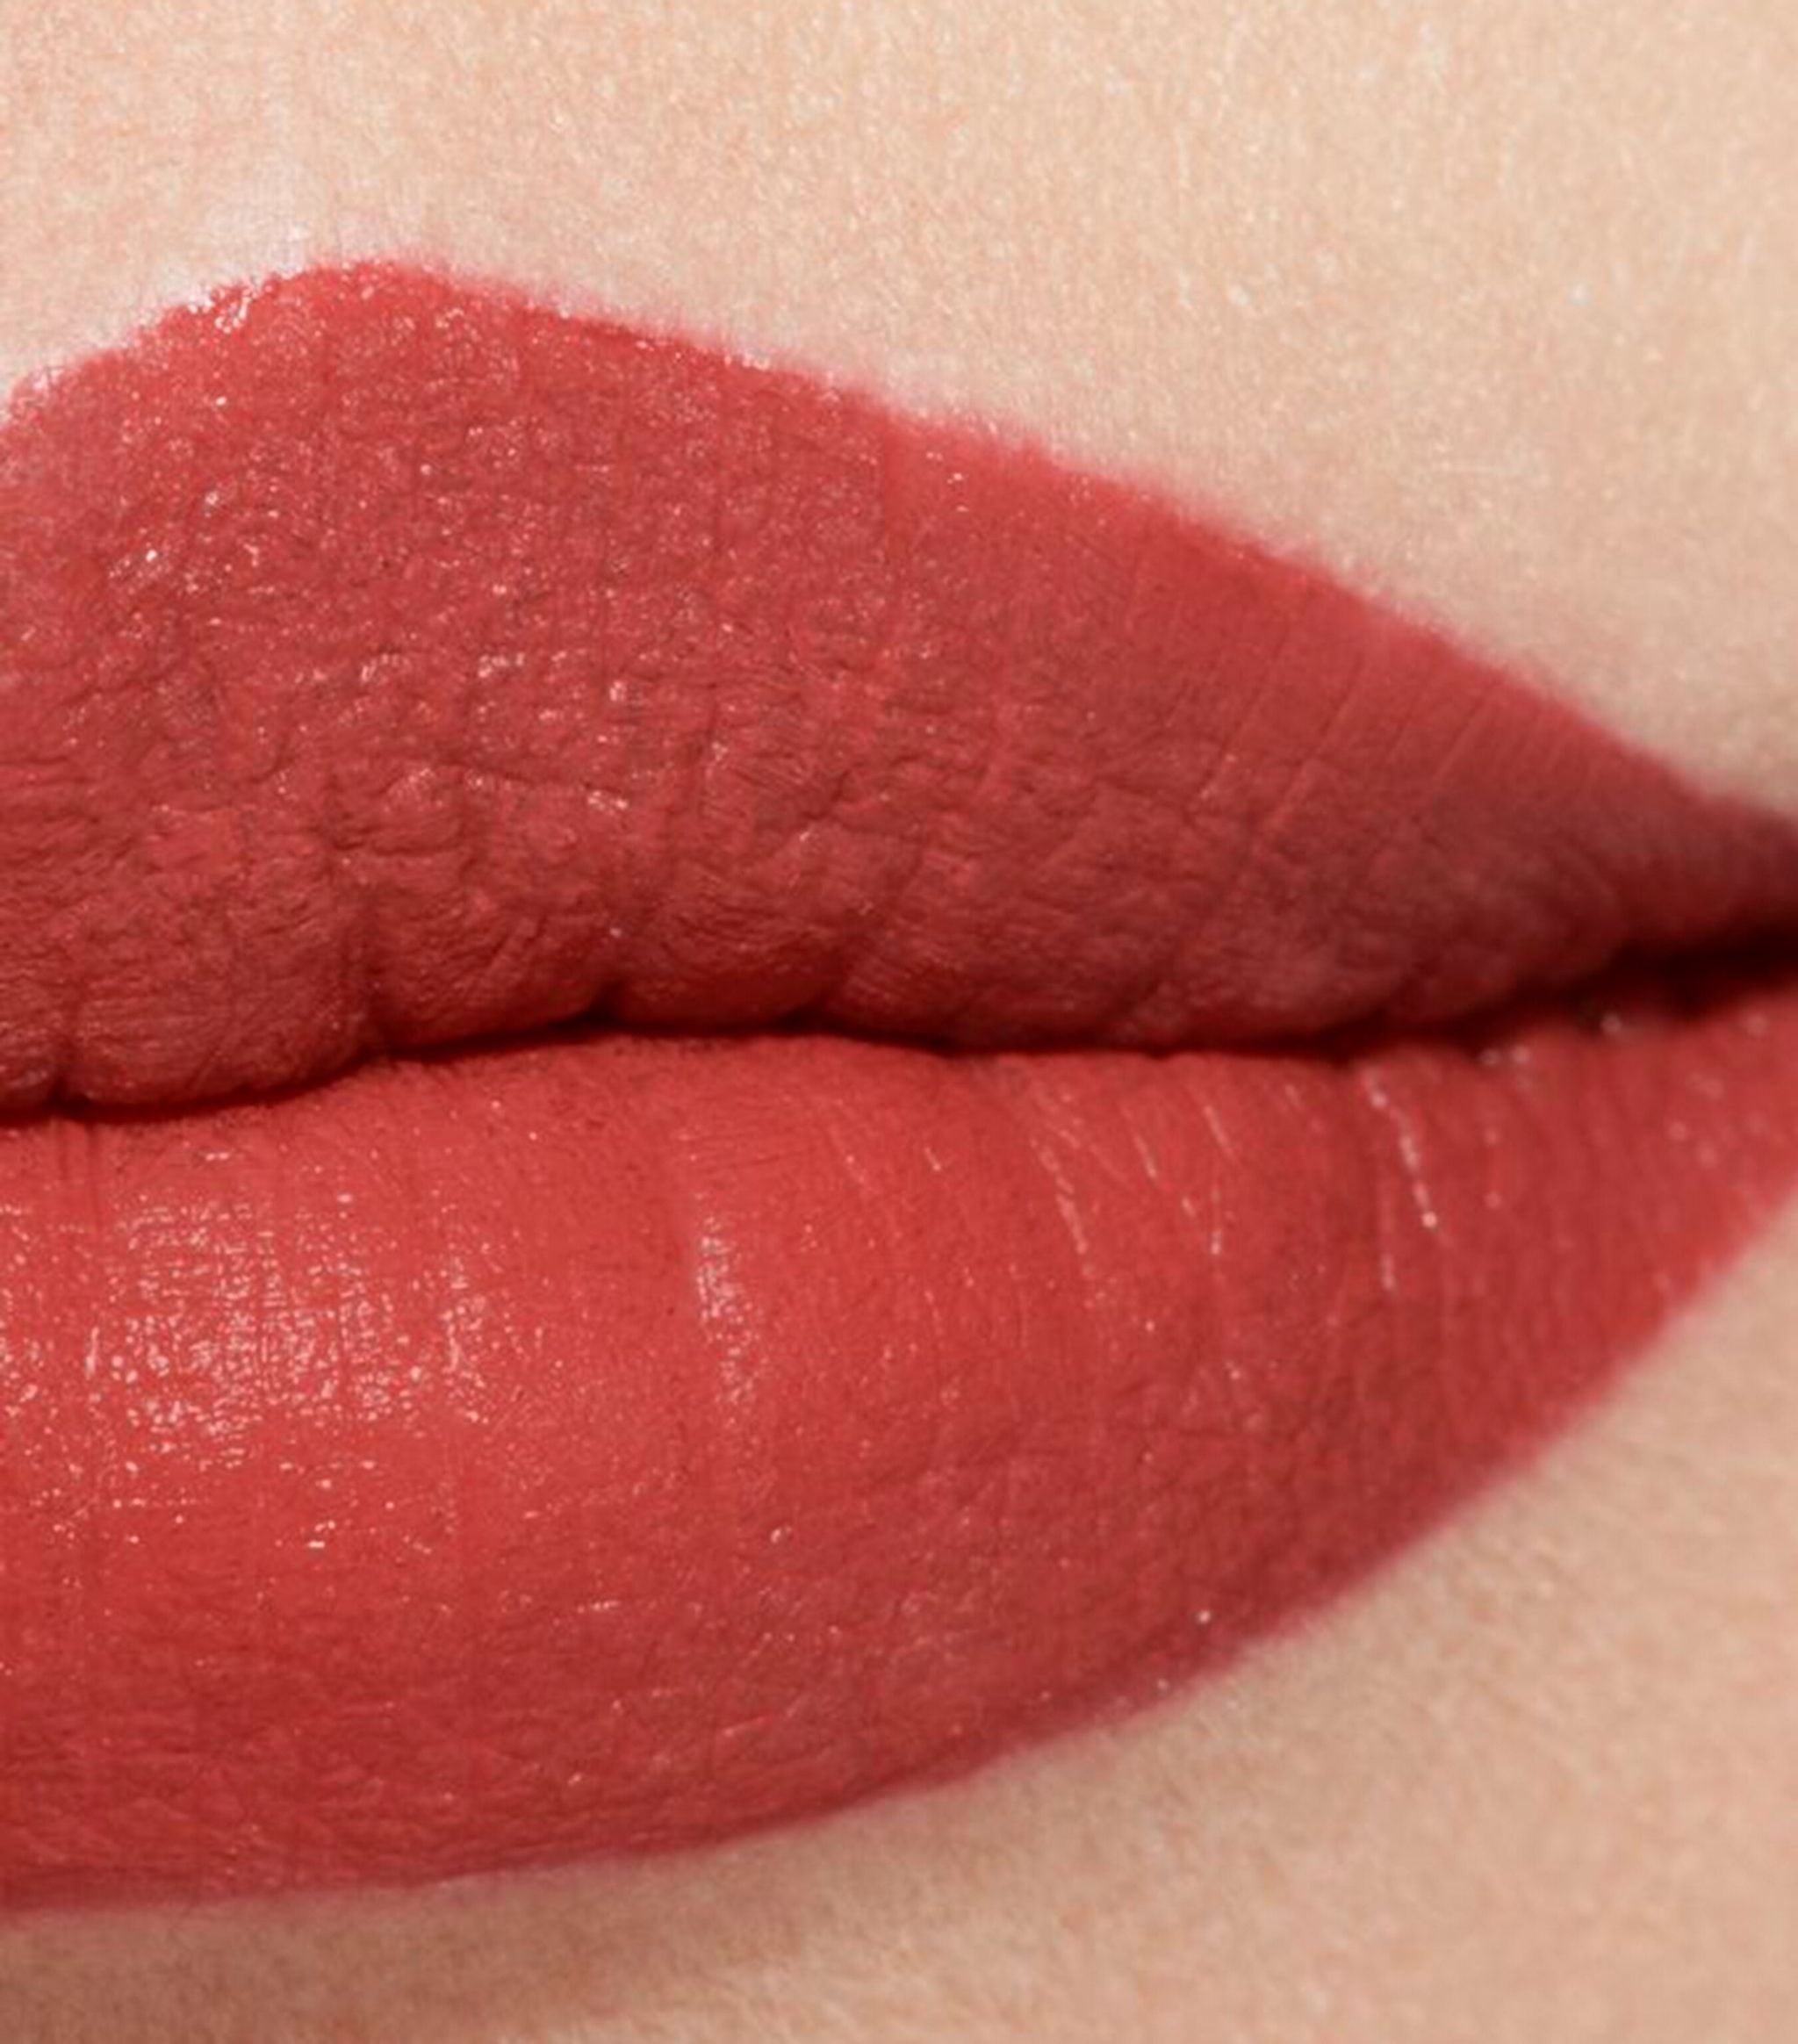 Chanel La Favorite Rouge Allure Velvet Luminous Matte Lip Colour